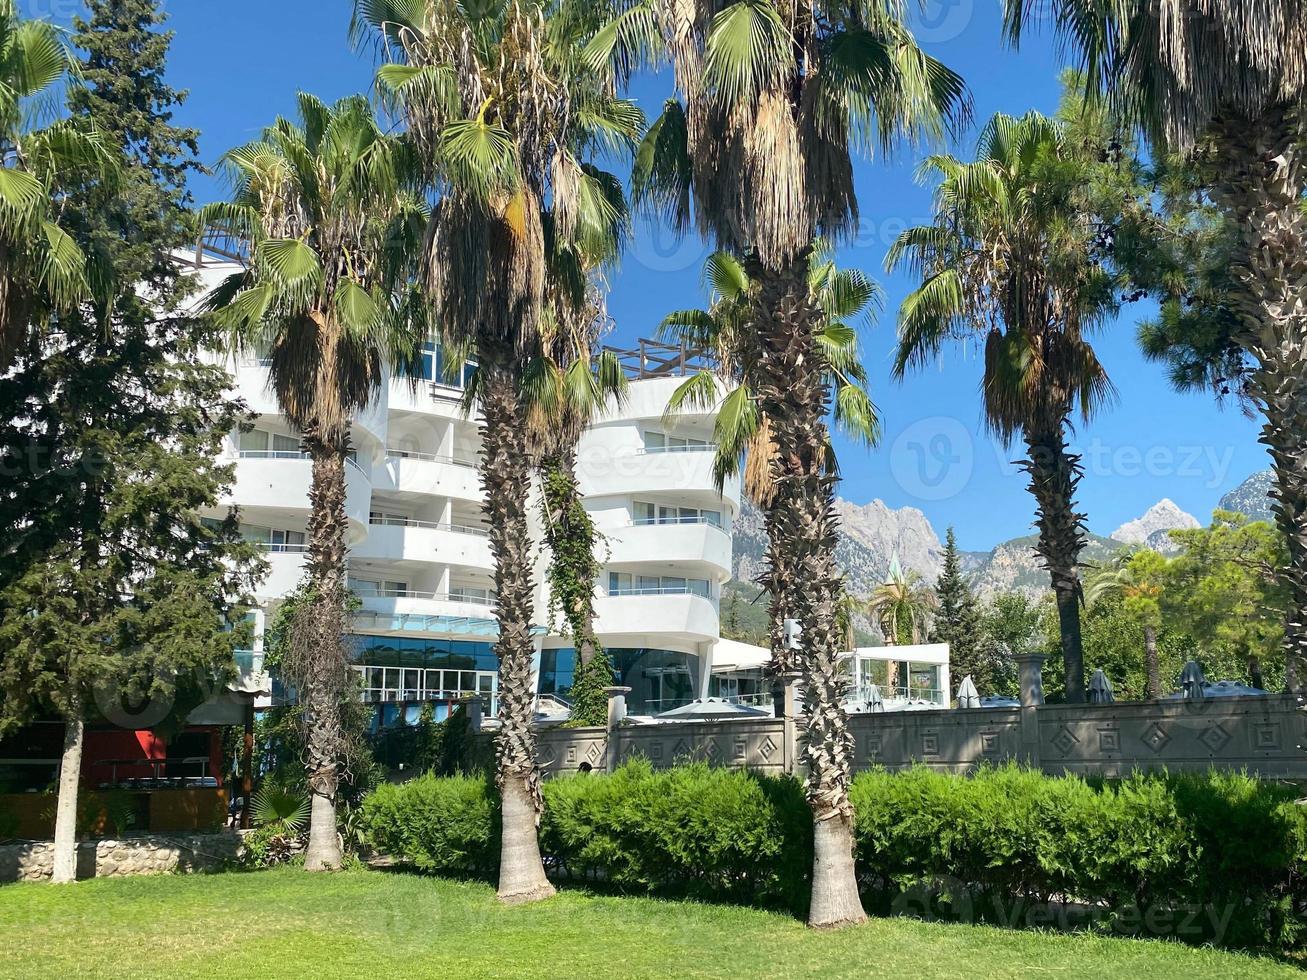 condomínio white south beach com palmeiras foto